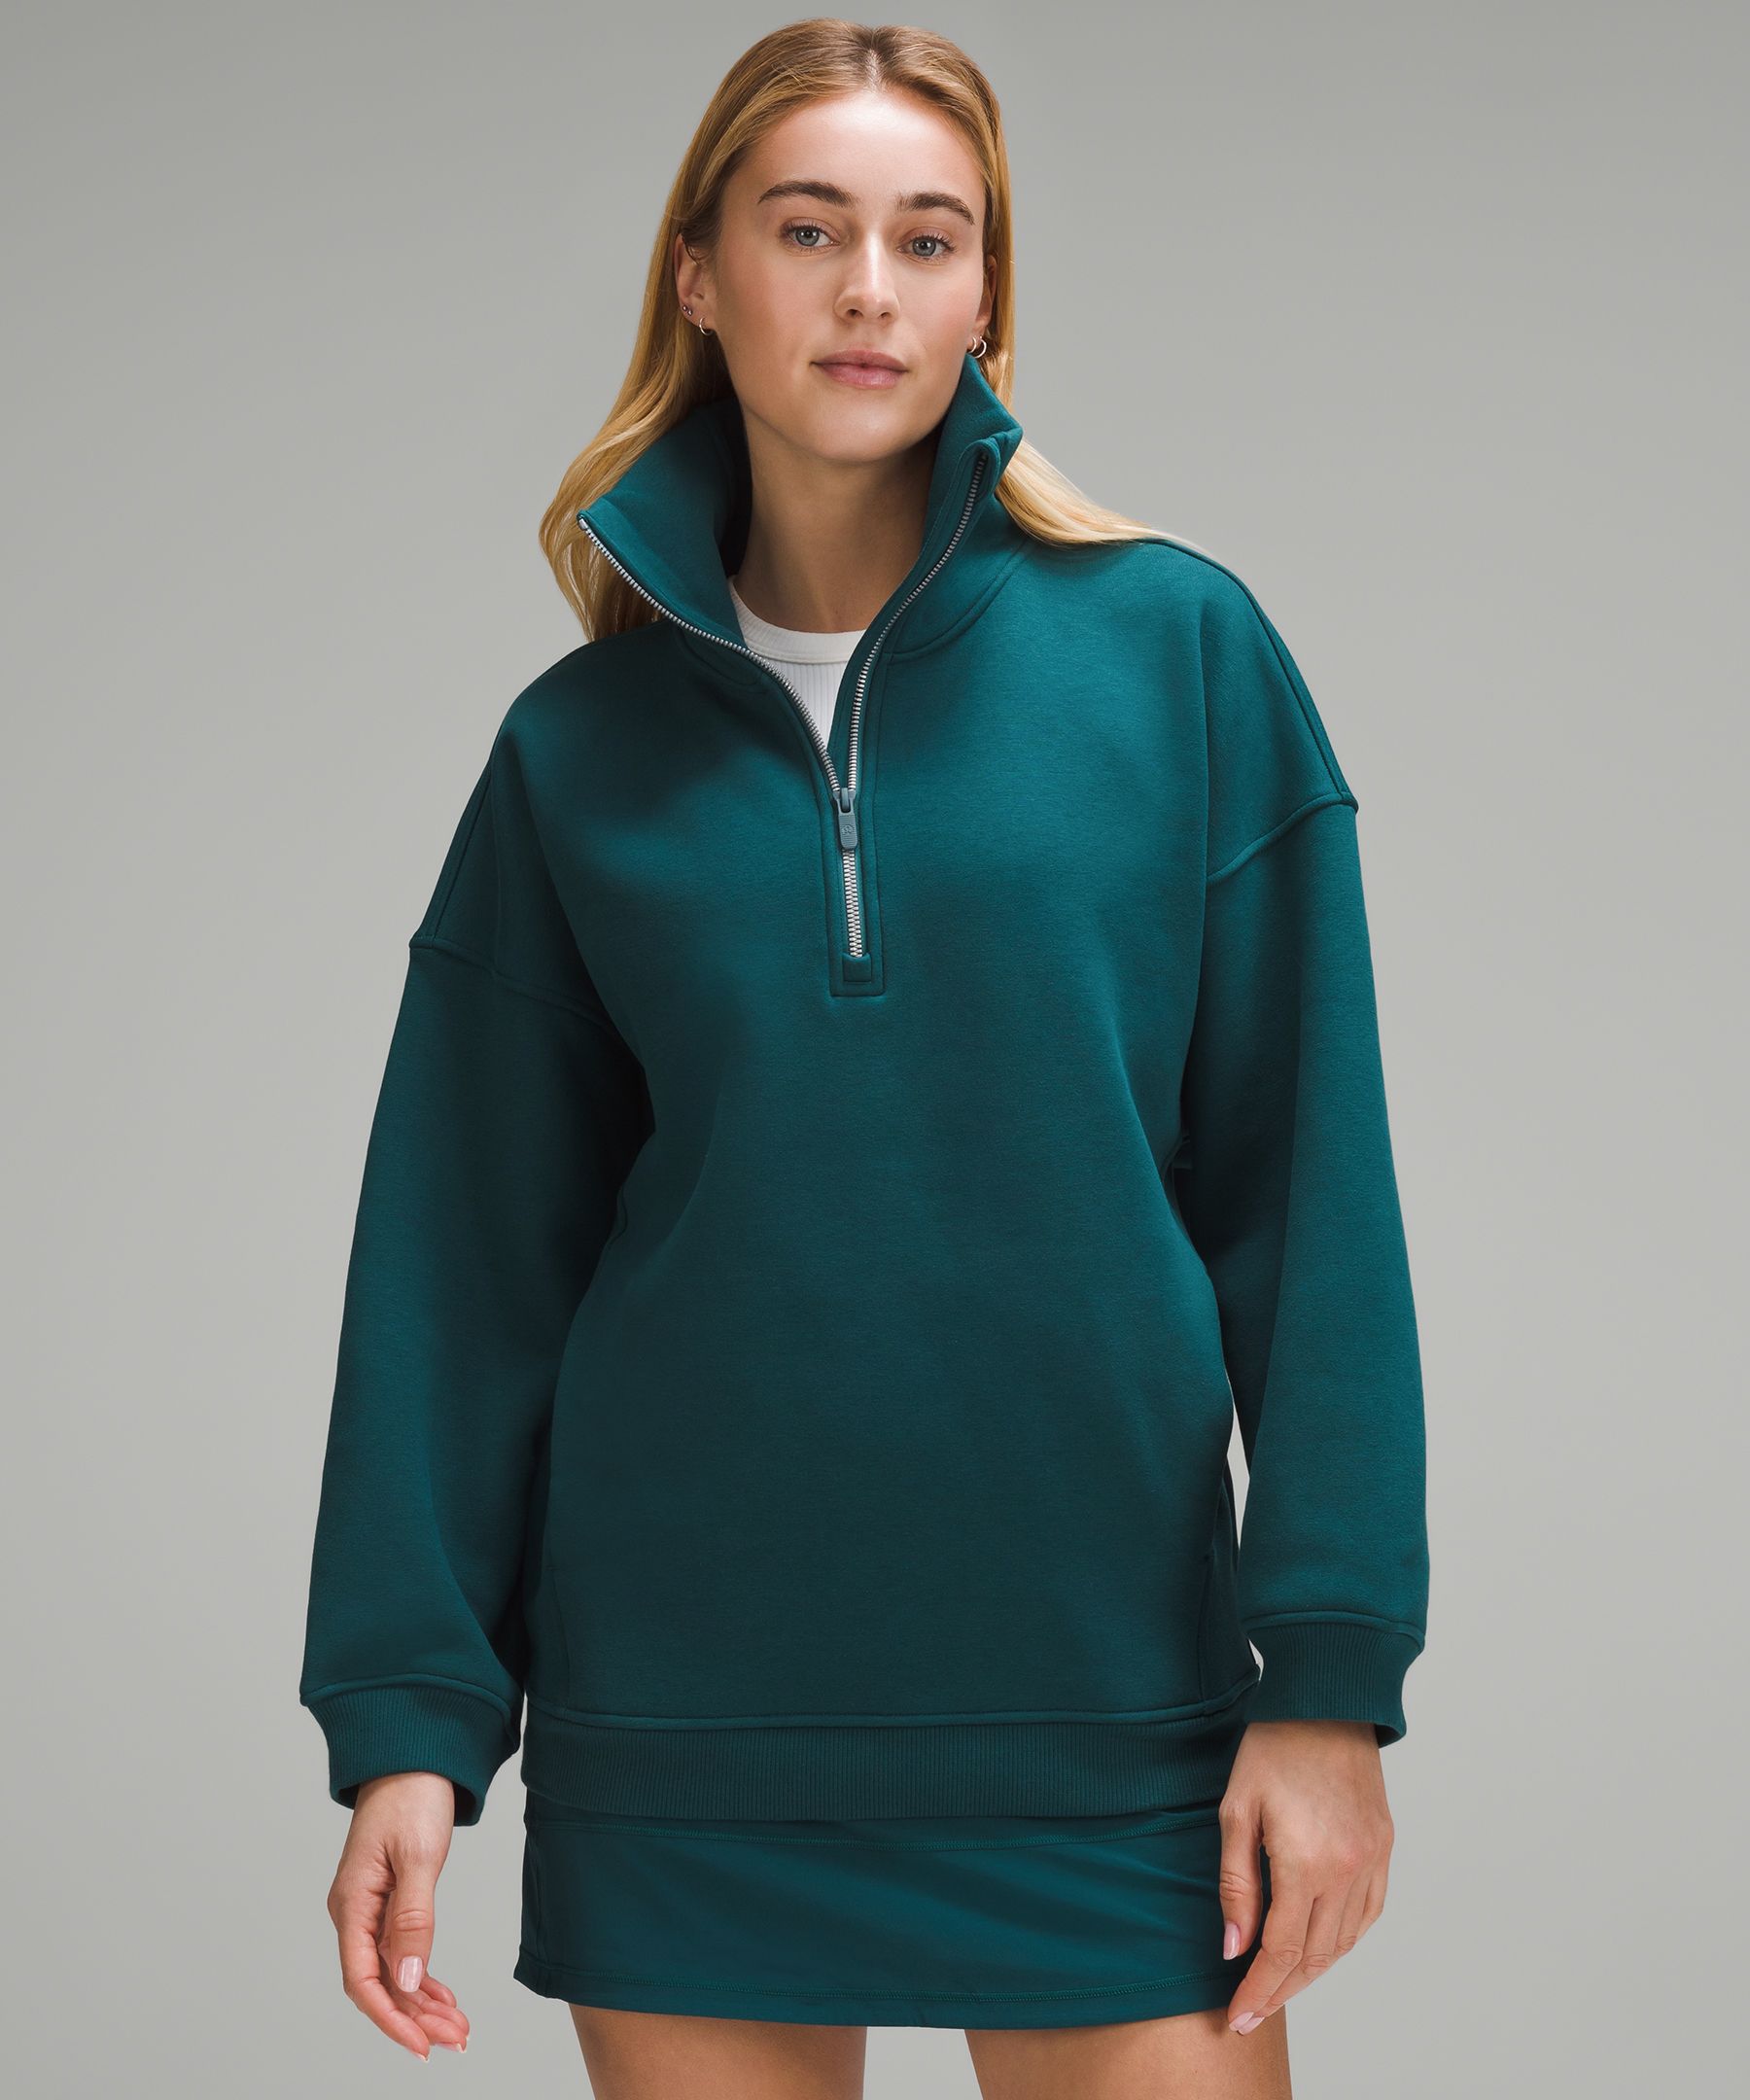 Thick Fleece Half Zip, Women's Hoodies & Sweatshirts